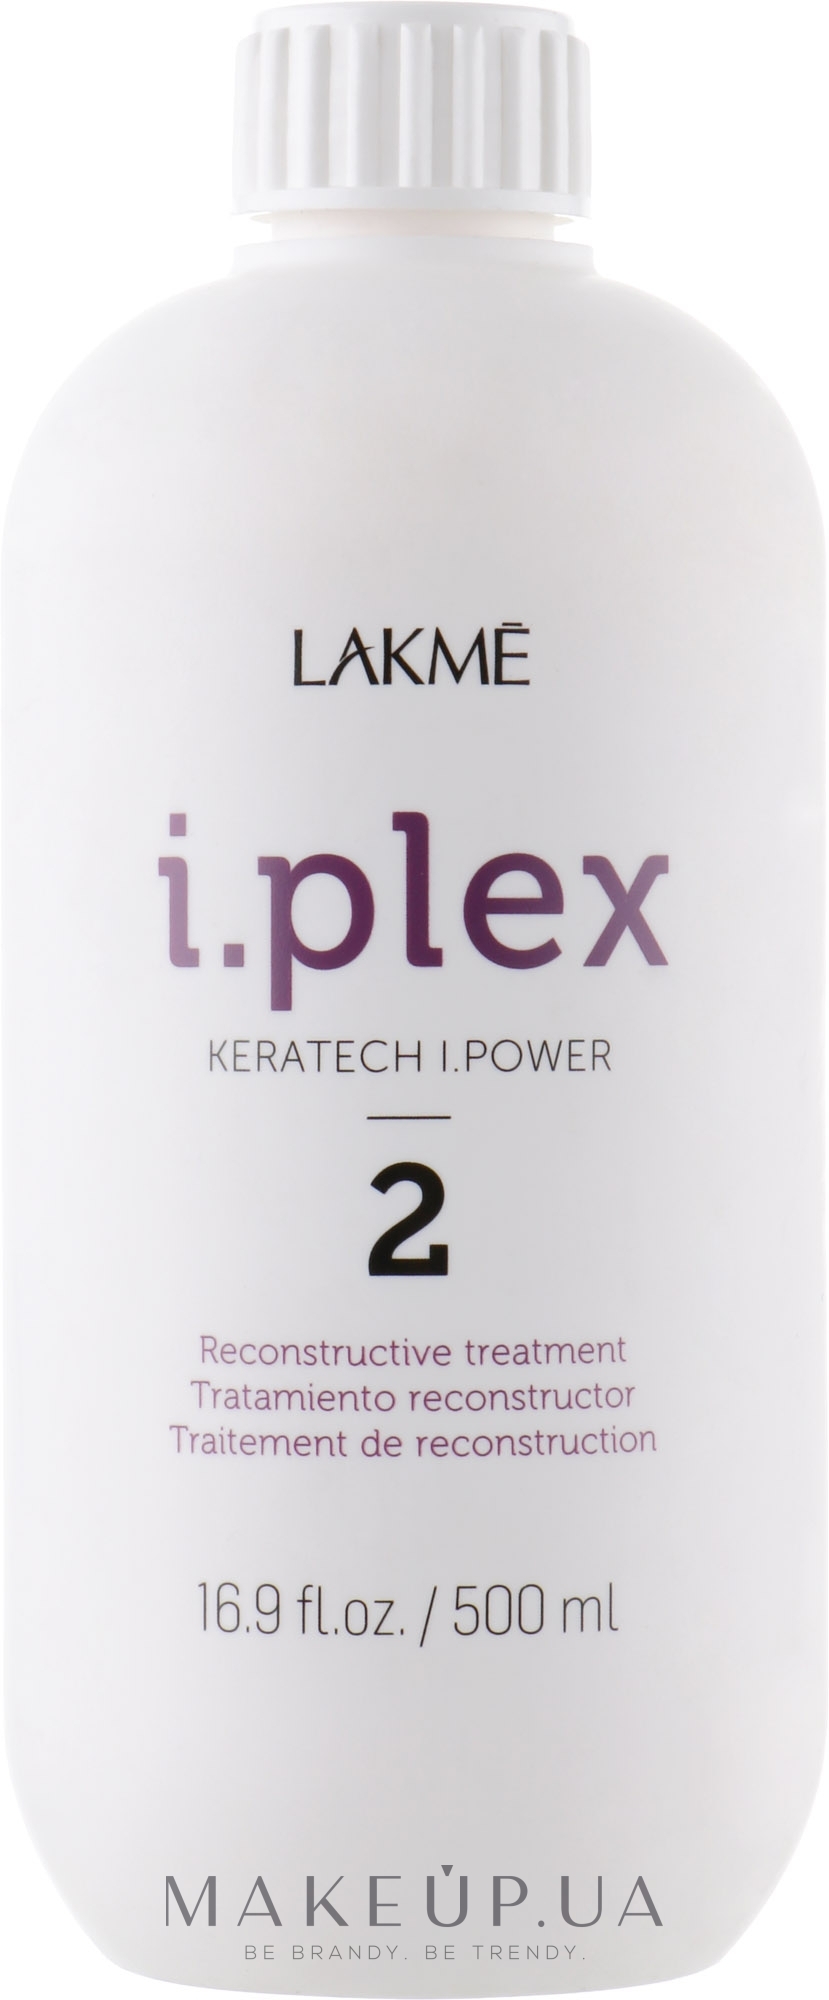 Восстанавливающее средство для волос - Lakme i.plex Keratech I.Power 2 — фото 500ml